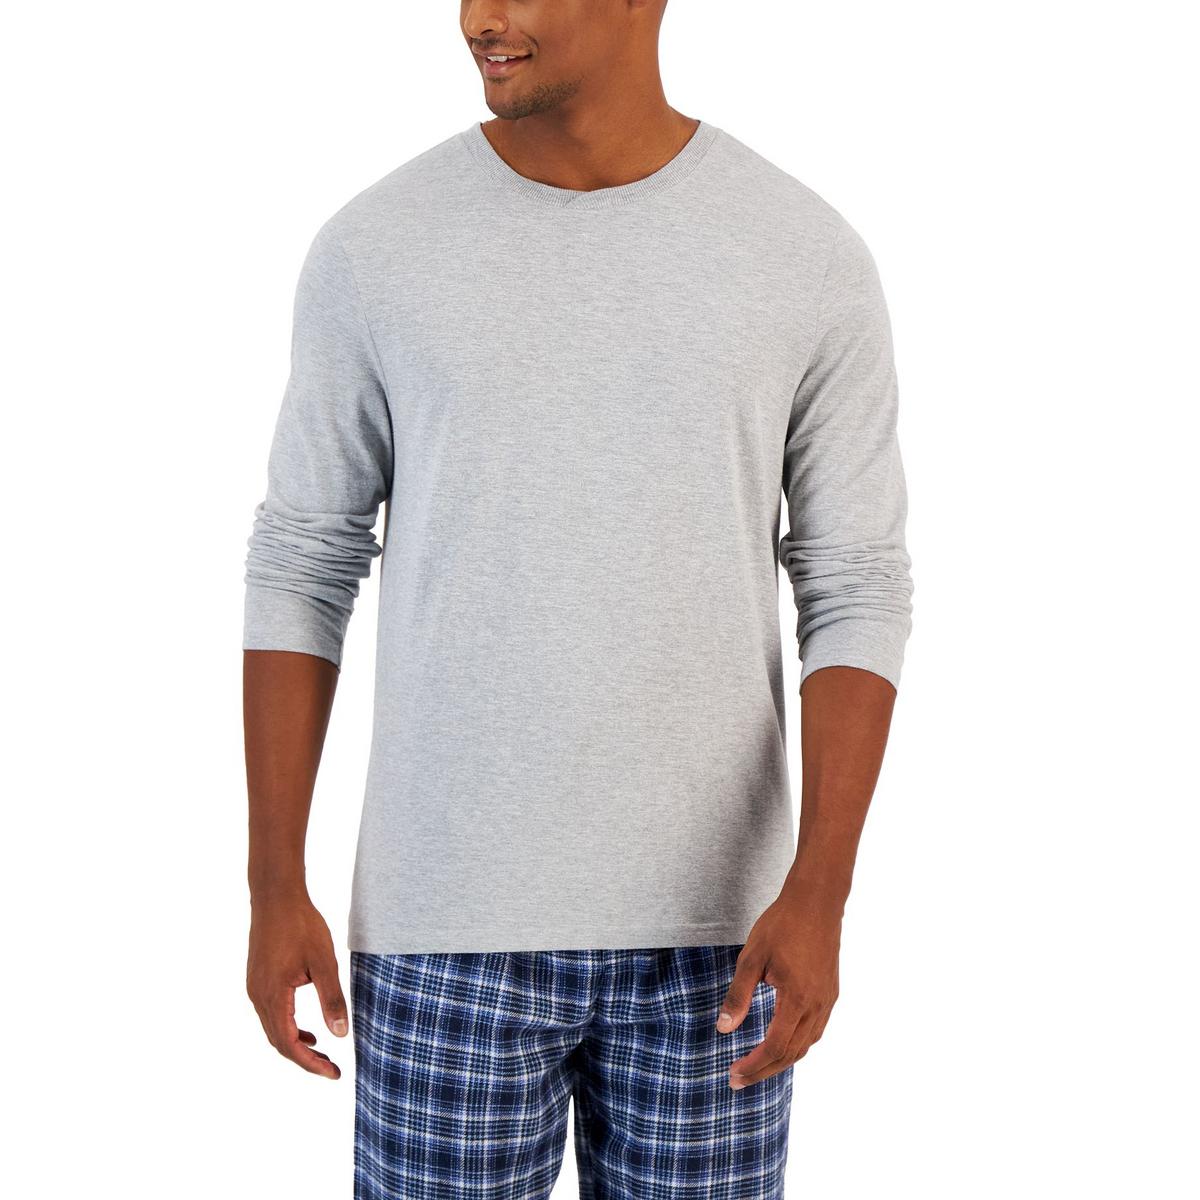 The Sleep Shirt: Luxury Nightshirts, Sleepwear, & Loungewear - The